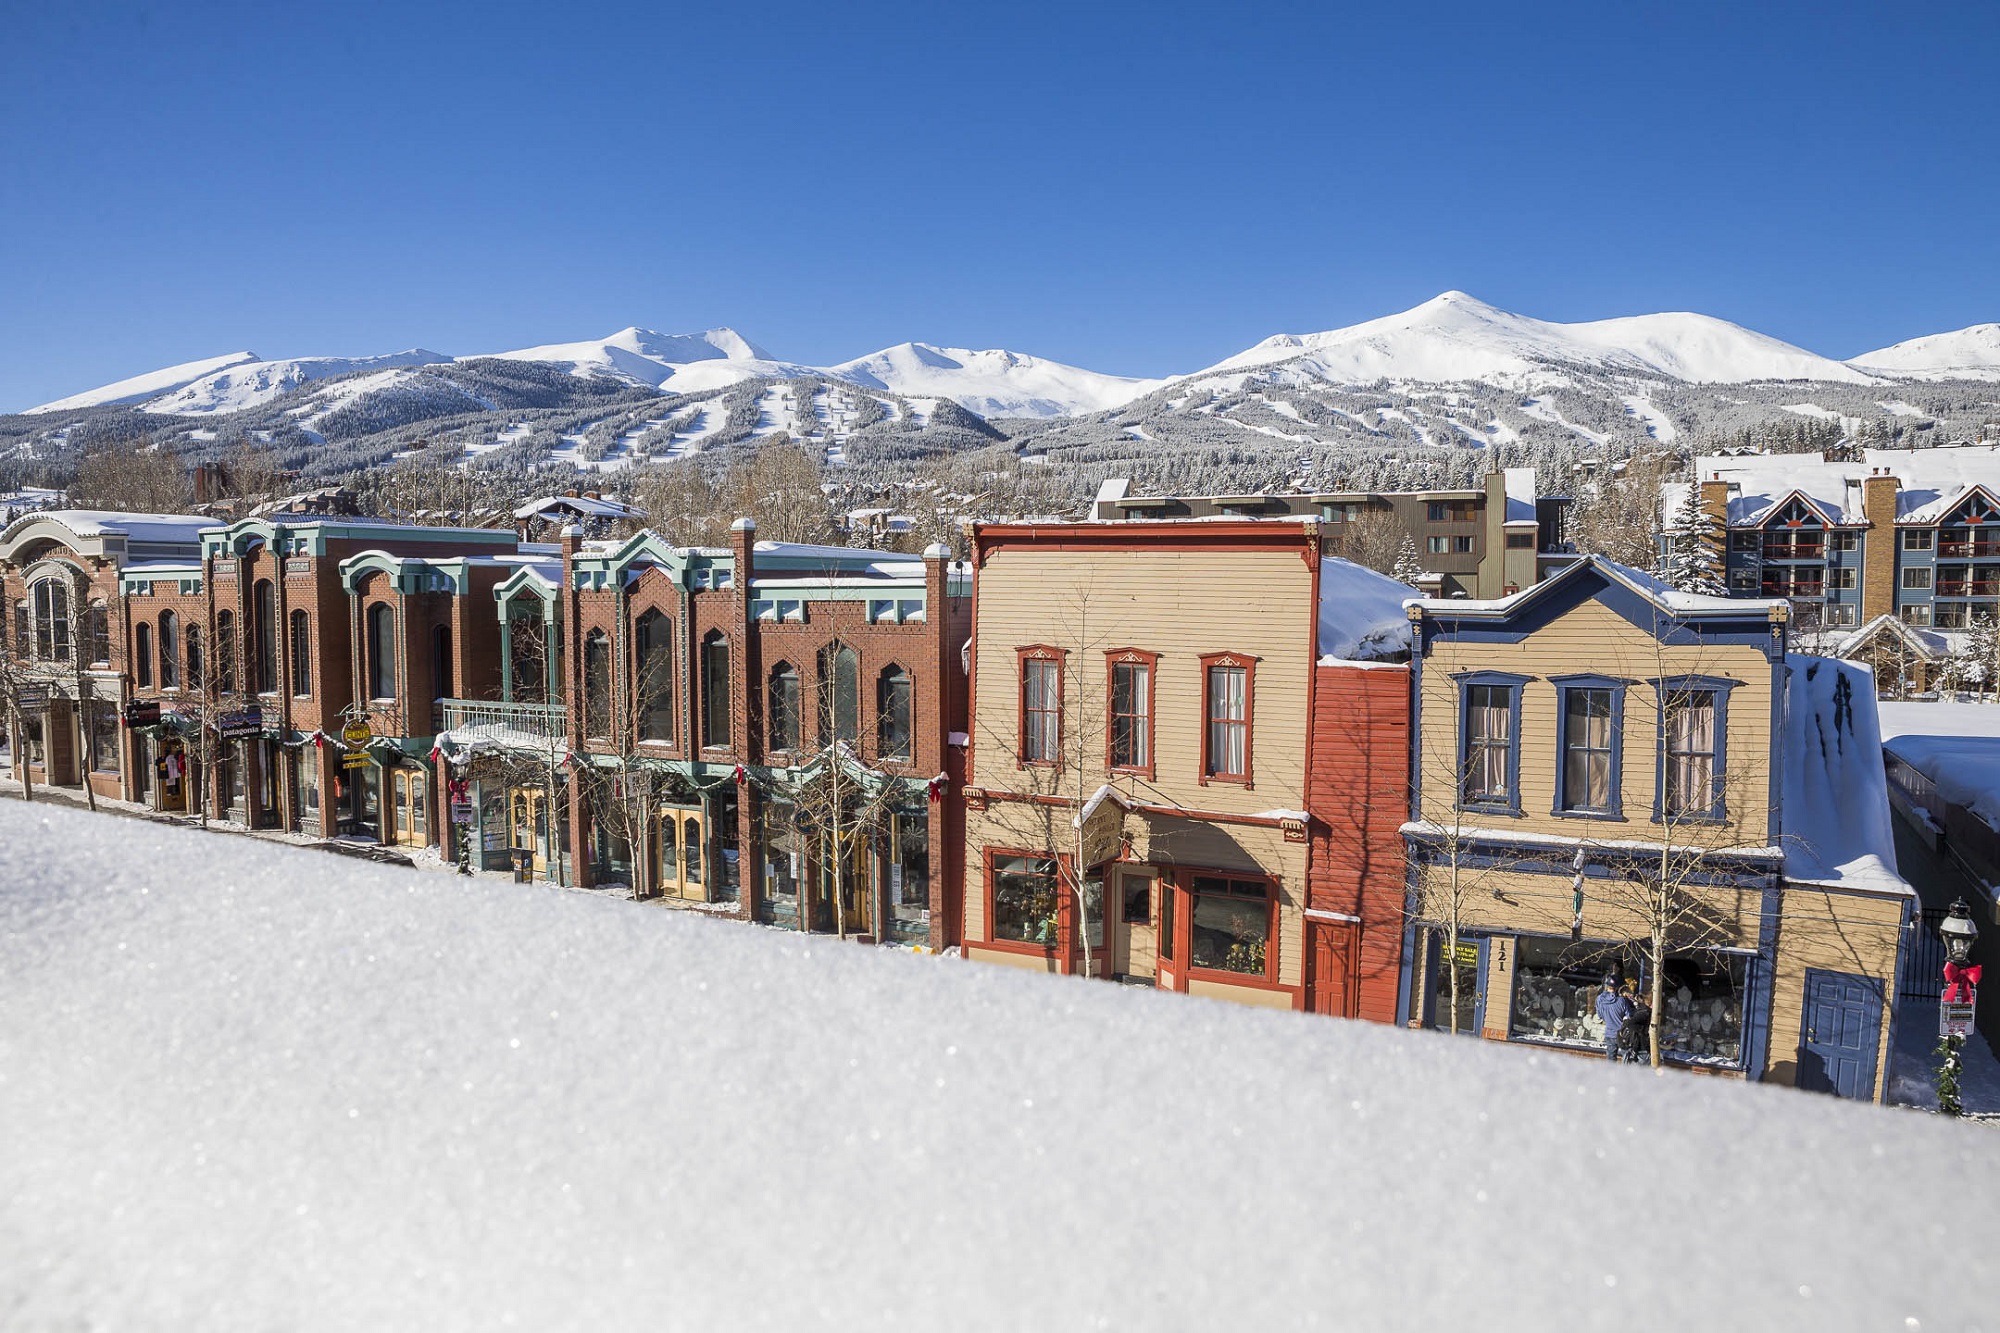 Downtown Breckenridge, Colorado in the winter